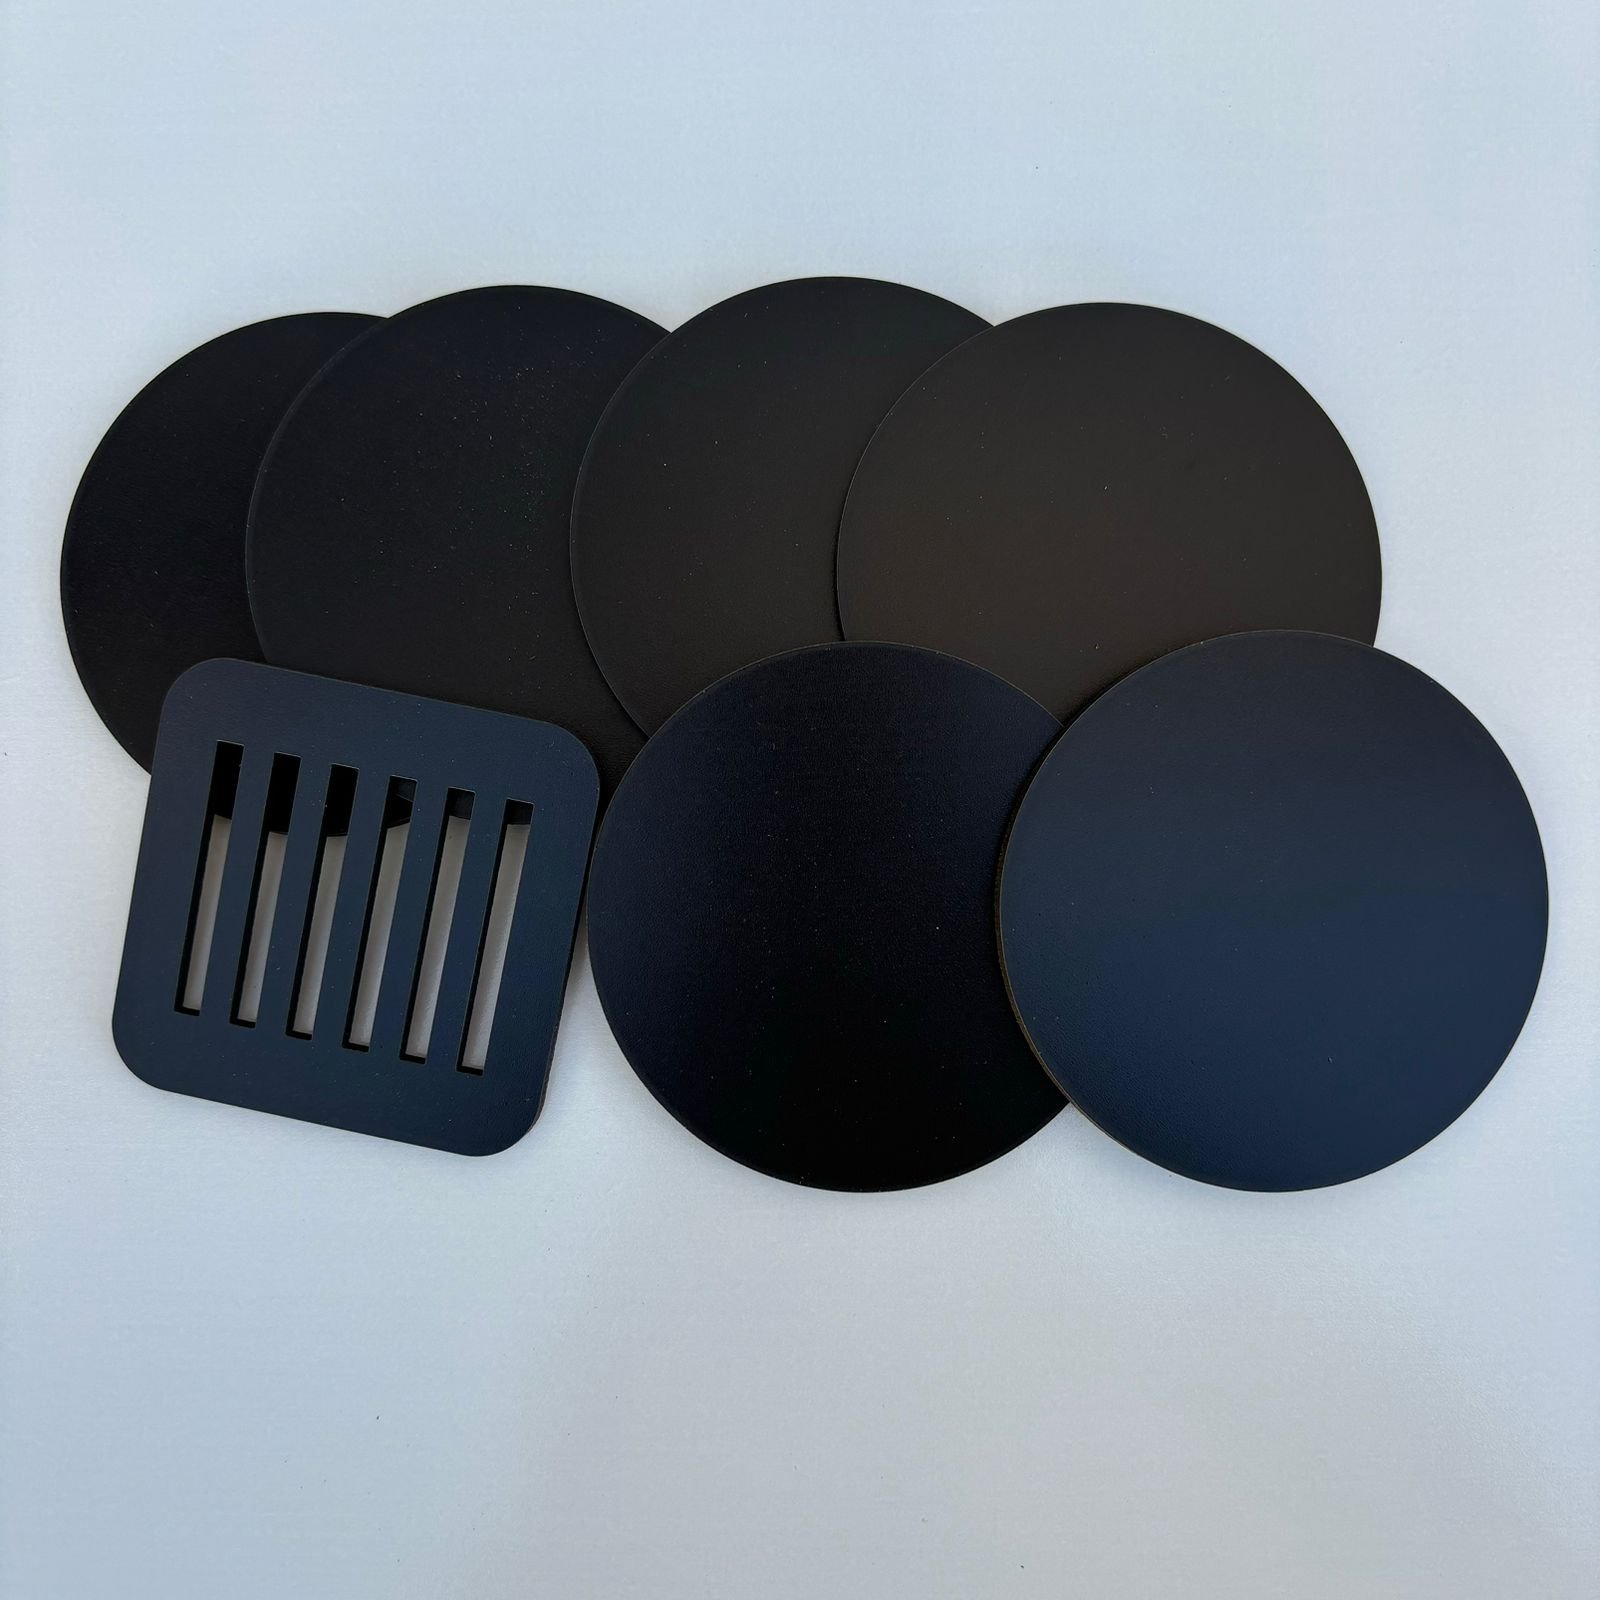 Kit de Porta Copos em Mdf 3mm com Suporte - Conjunto com 6 Unidades - Opções de Cores:preto